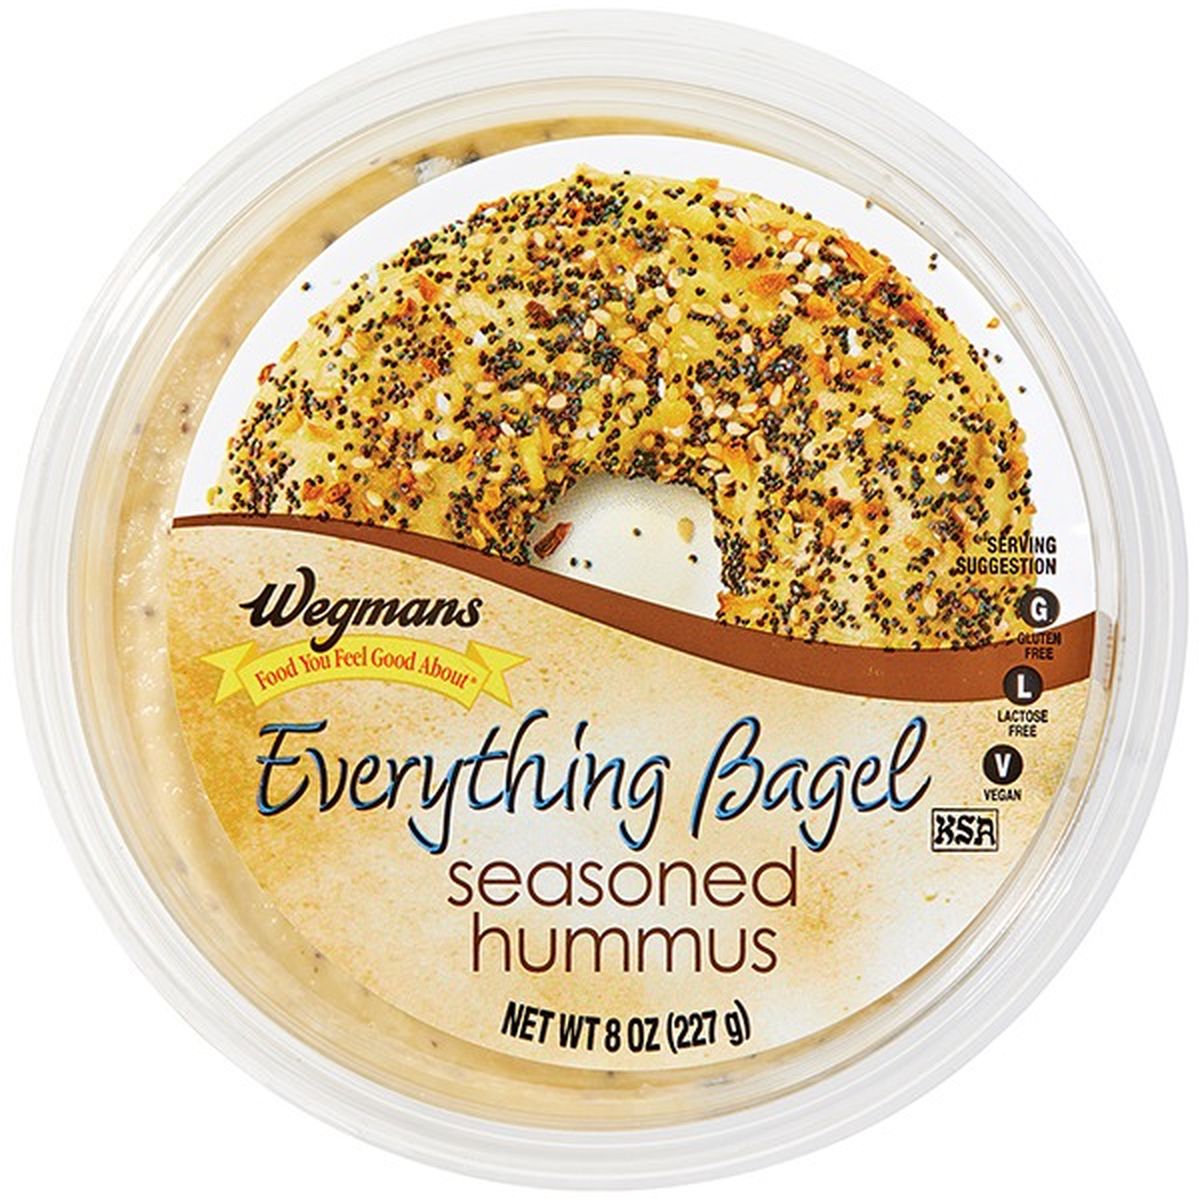 Calories in Wegmans Everything Bagel Seasoned Hummus